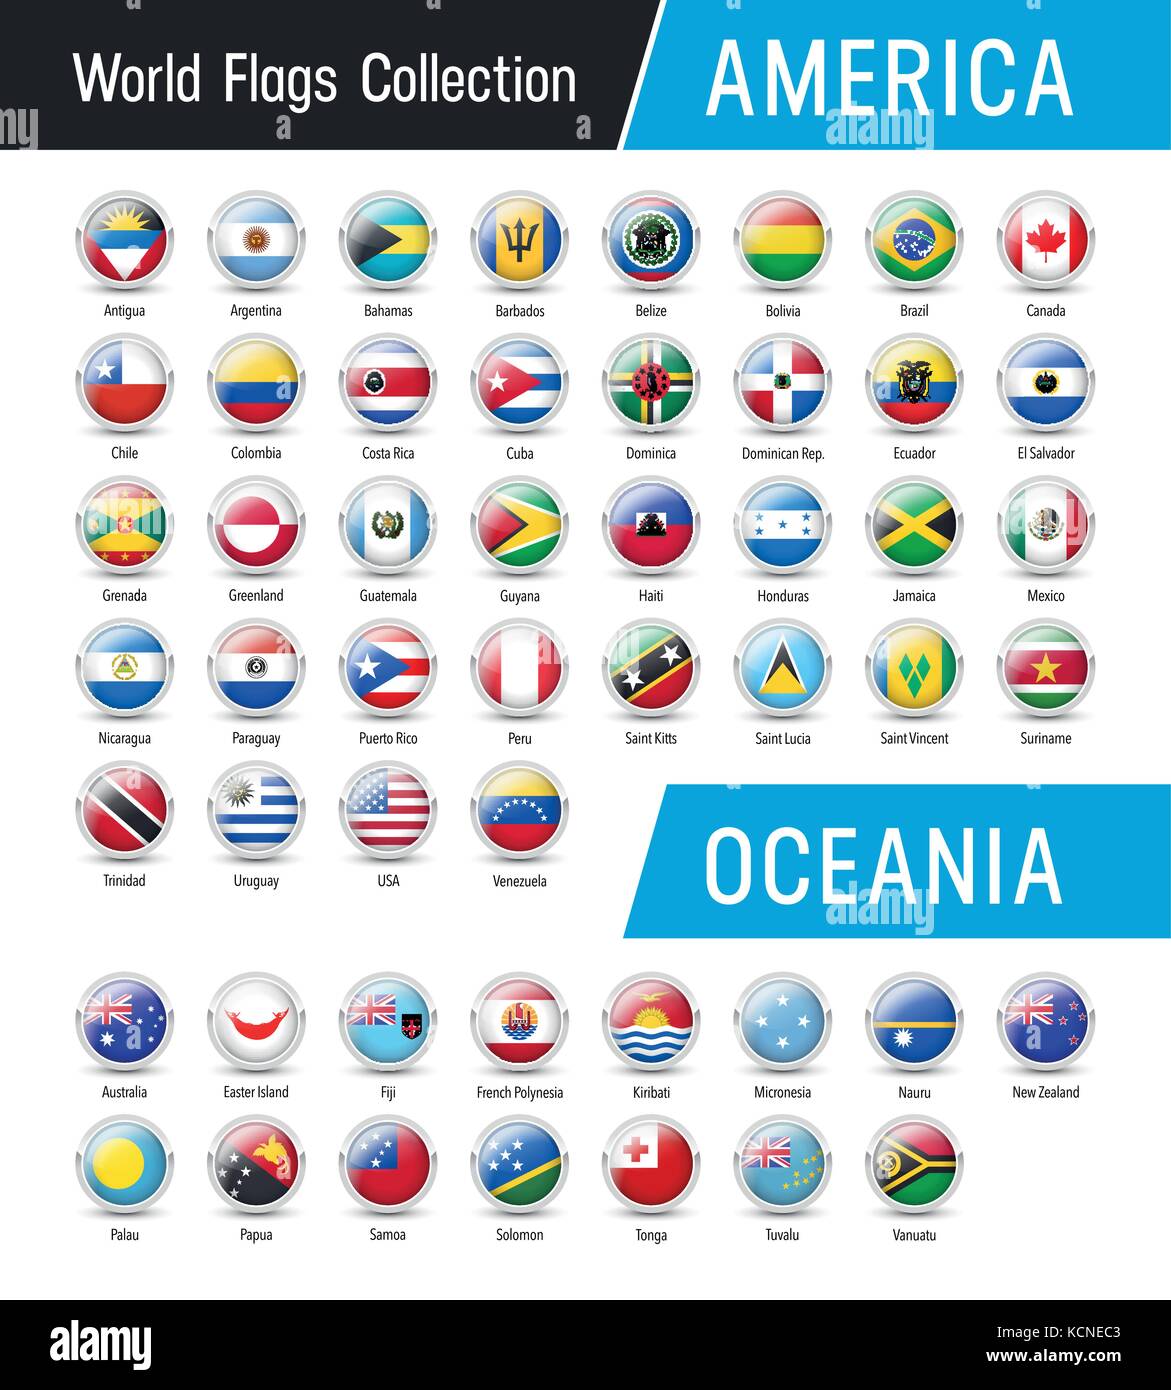 Flaggen von Amerika und Ozeanien, runde Symbole - Vektor Welt Fahnen Sammlung Stock Vektor